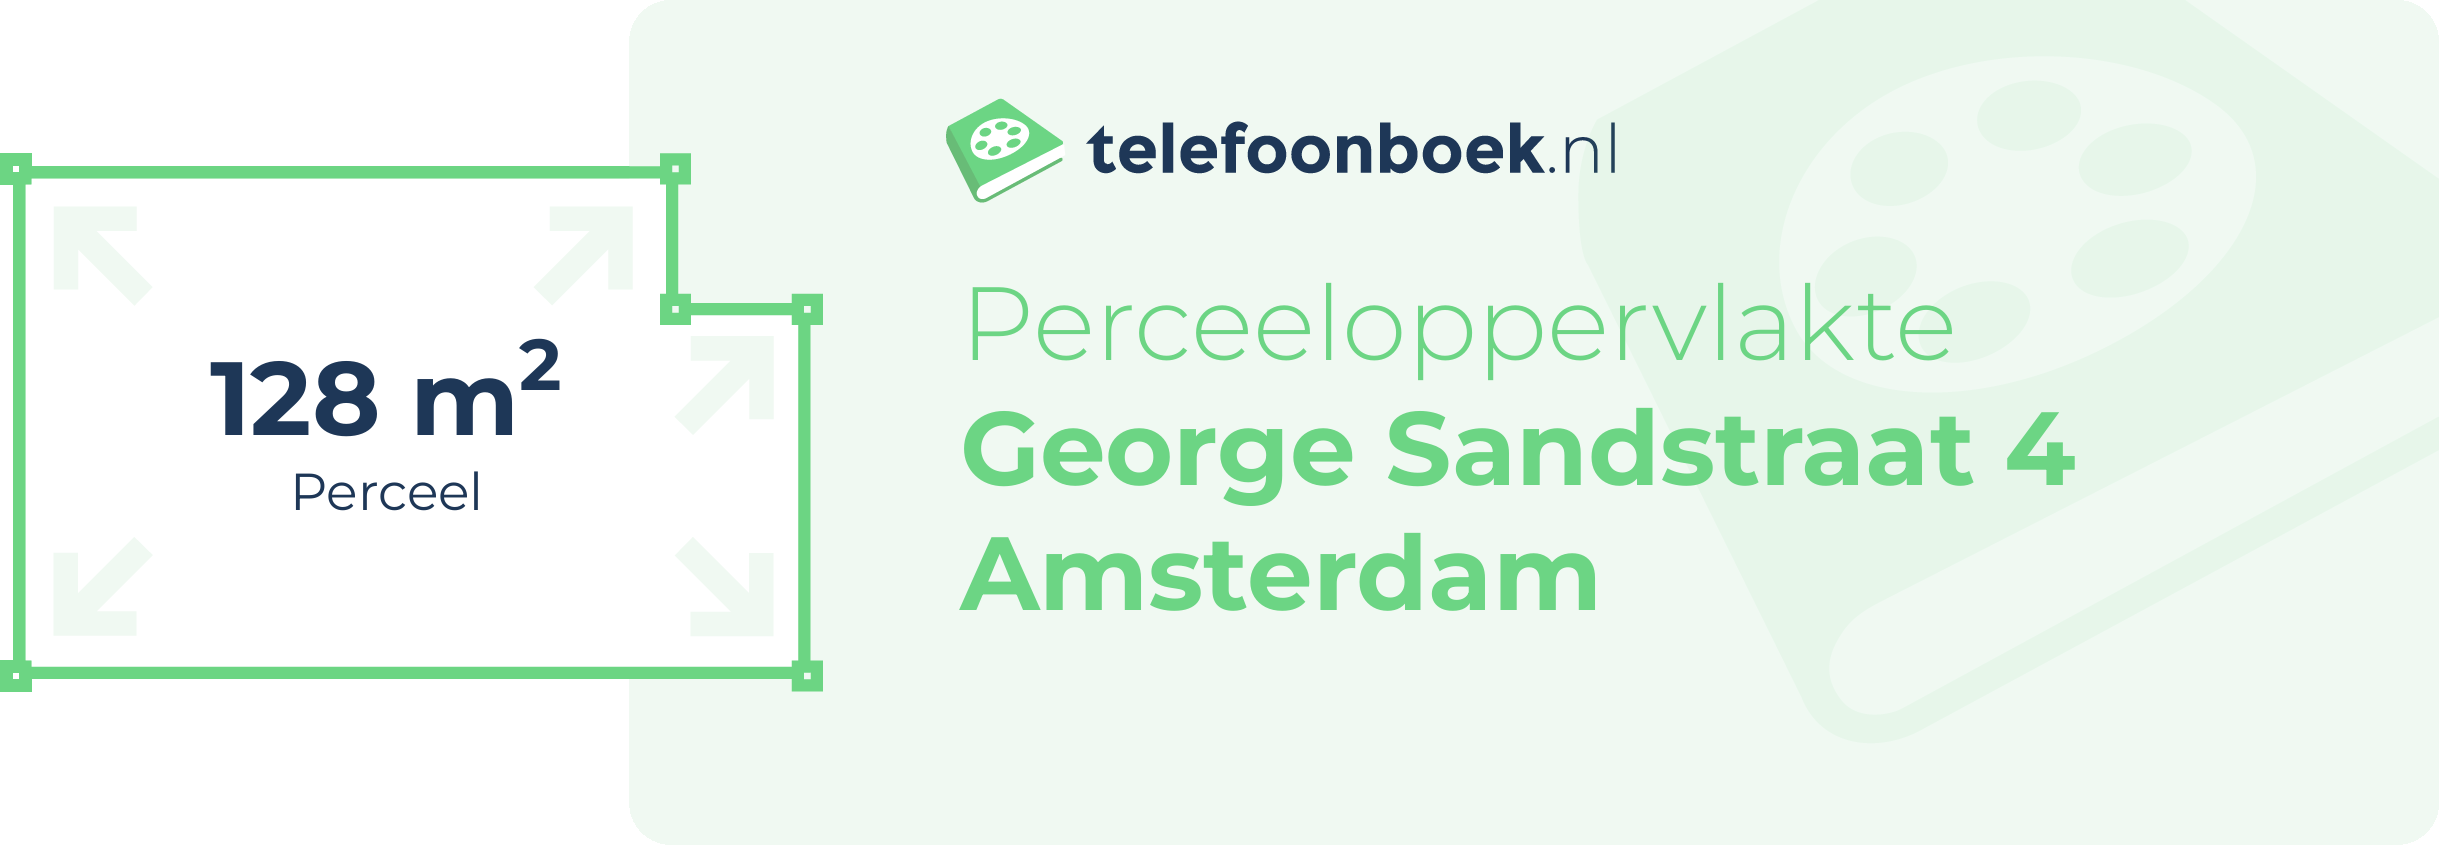 Perceeloppervlakte George Sandstraat 4 Amsterdam